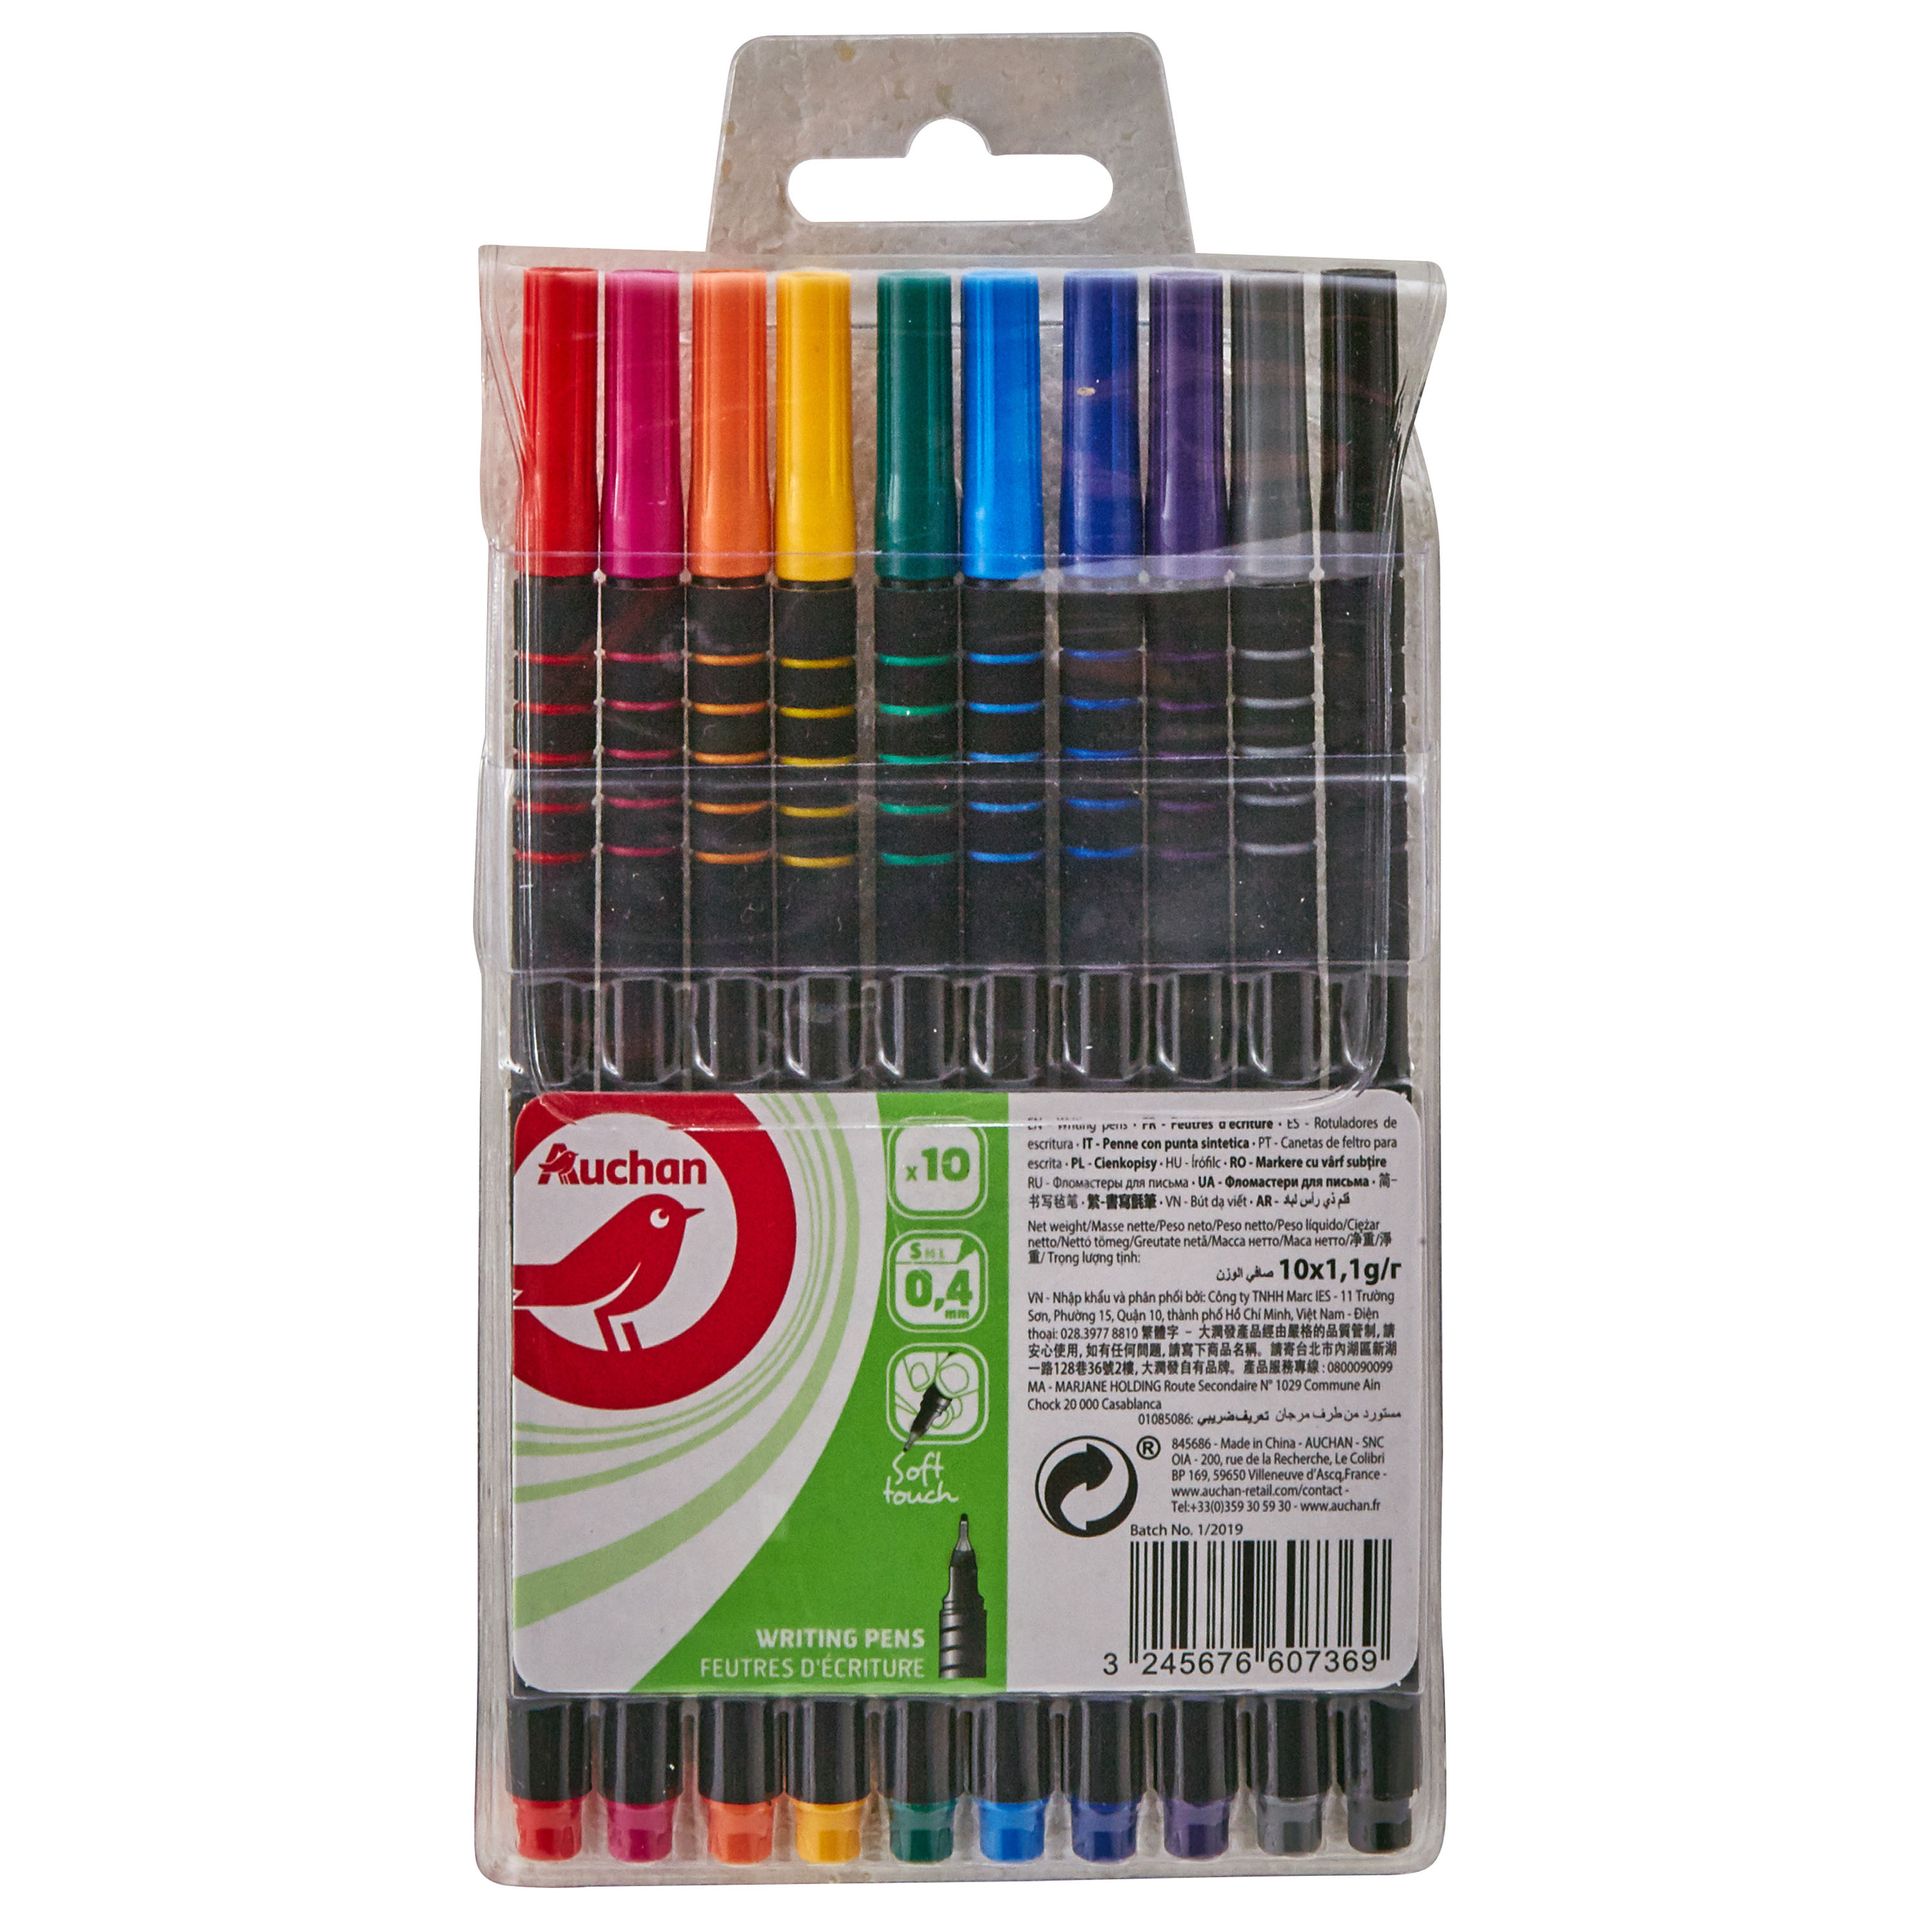 Auchan - Cienkopisy  różne kolory 0.4 mm 10 kolorów